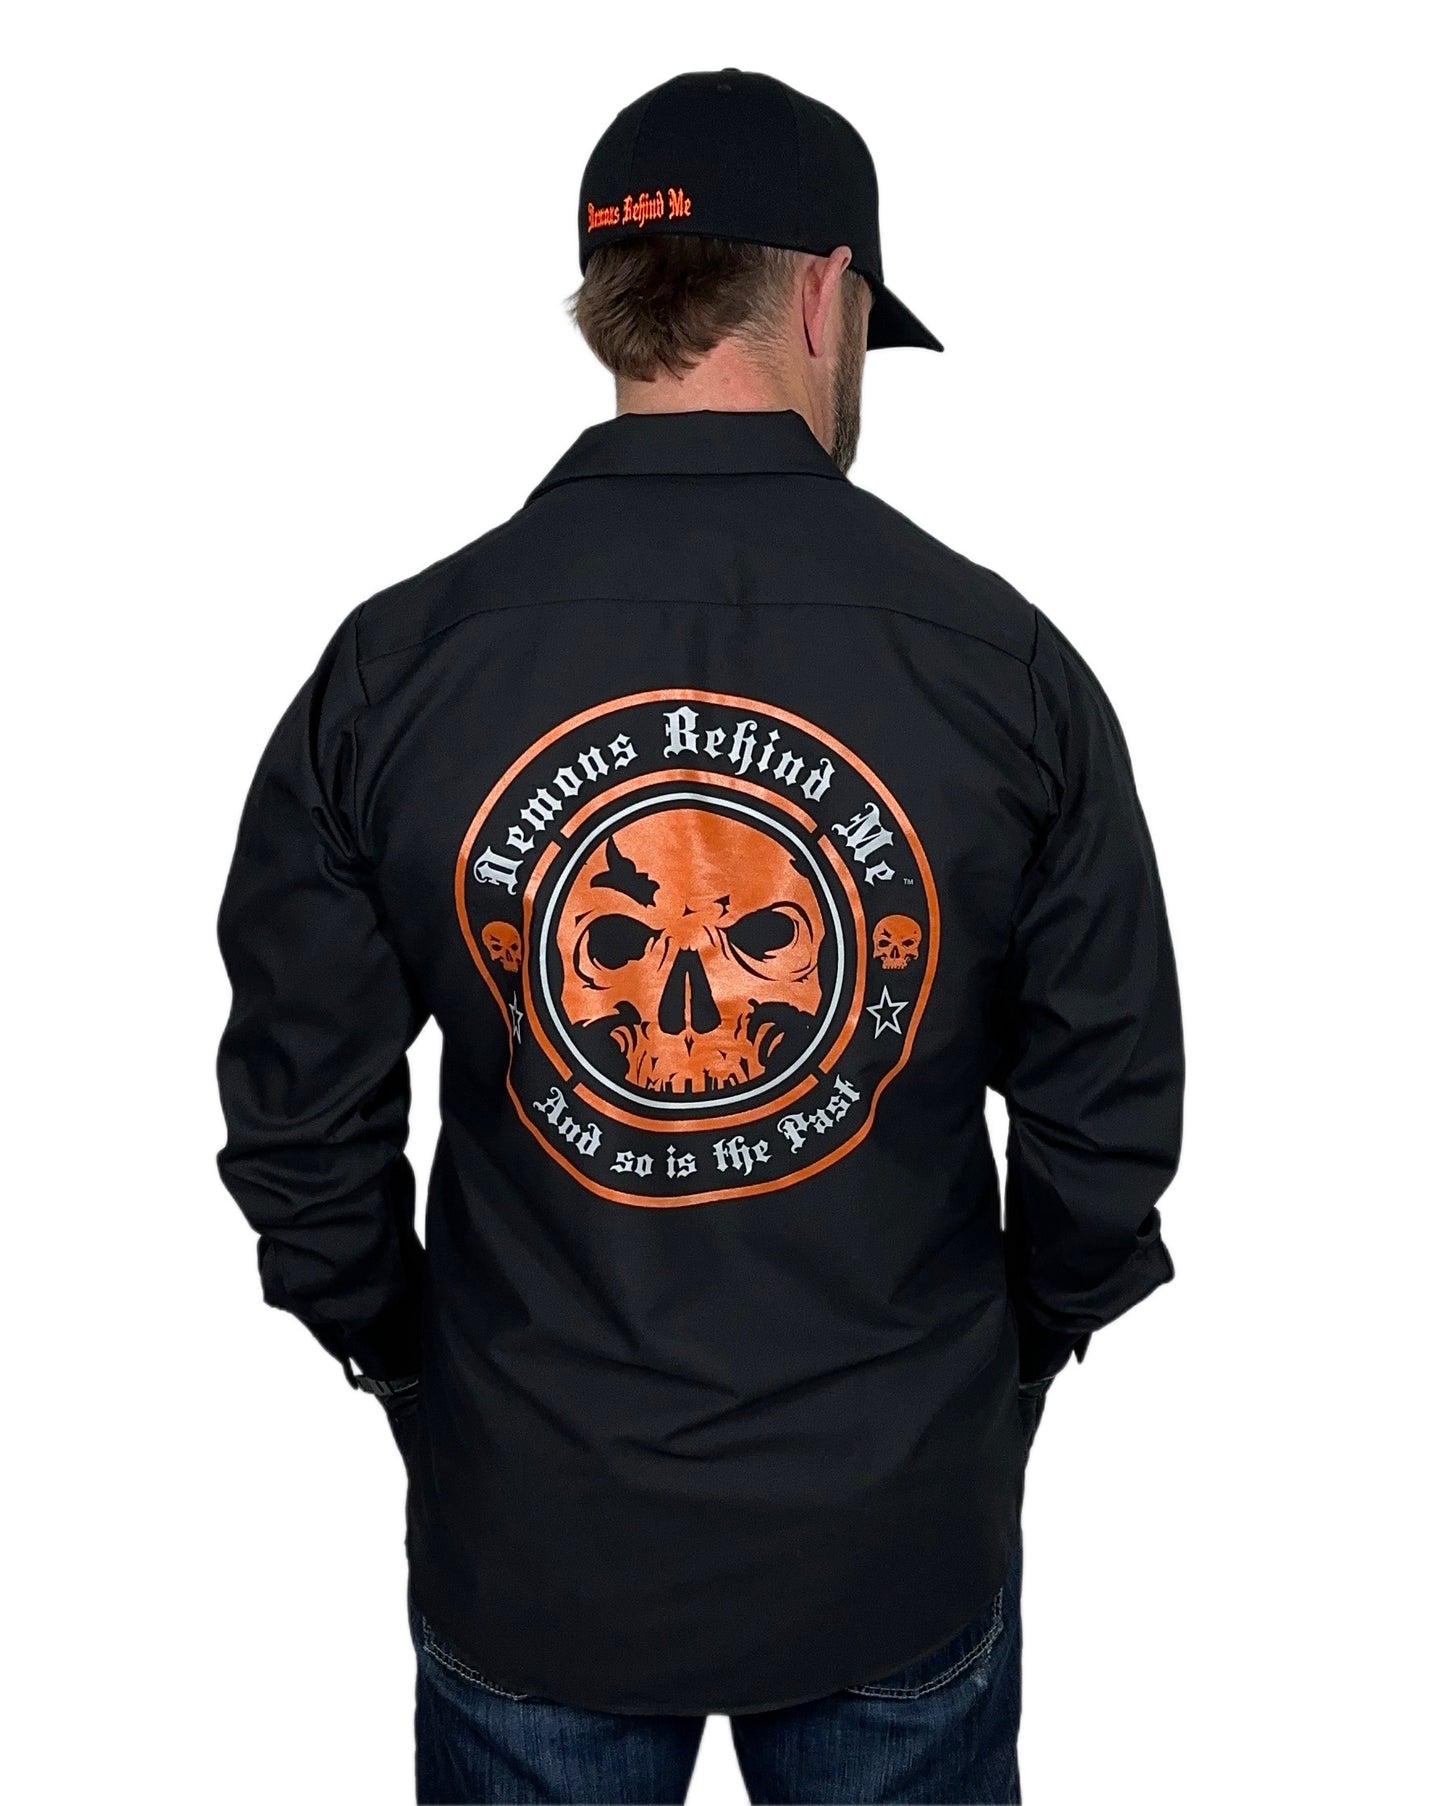 Men's Long Sleeve Black Embroidered Shop Shirt - Orange Logo